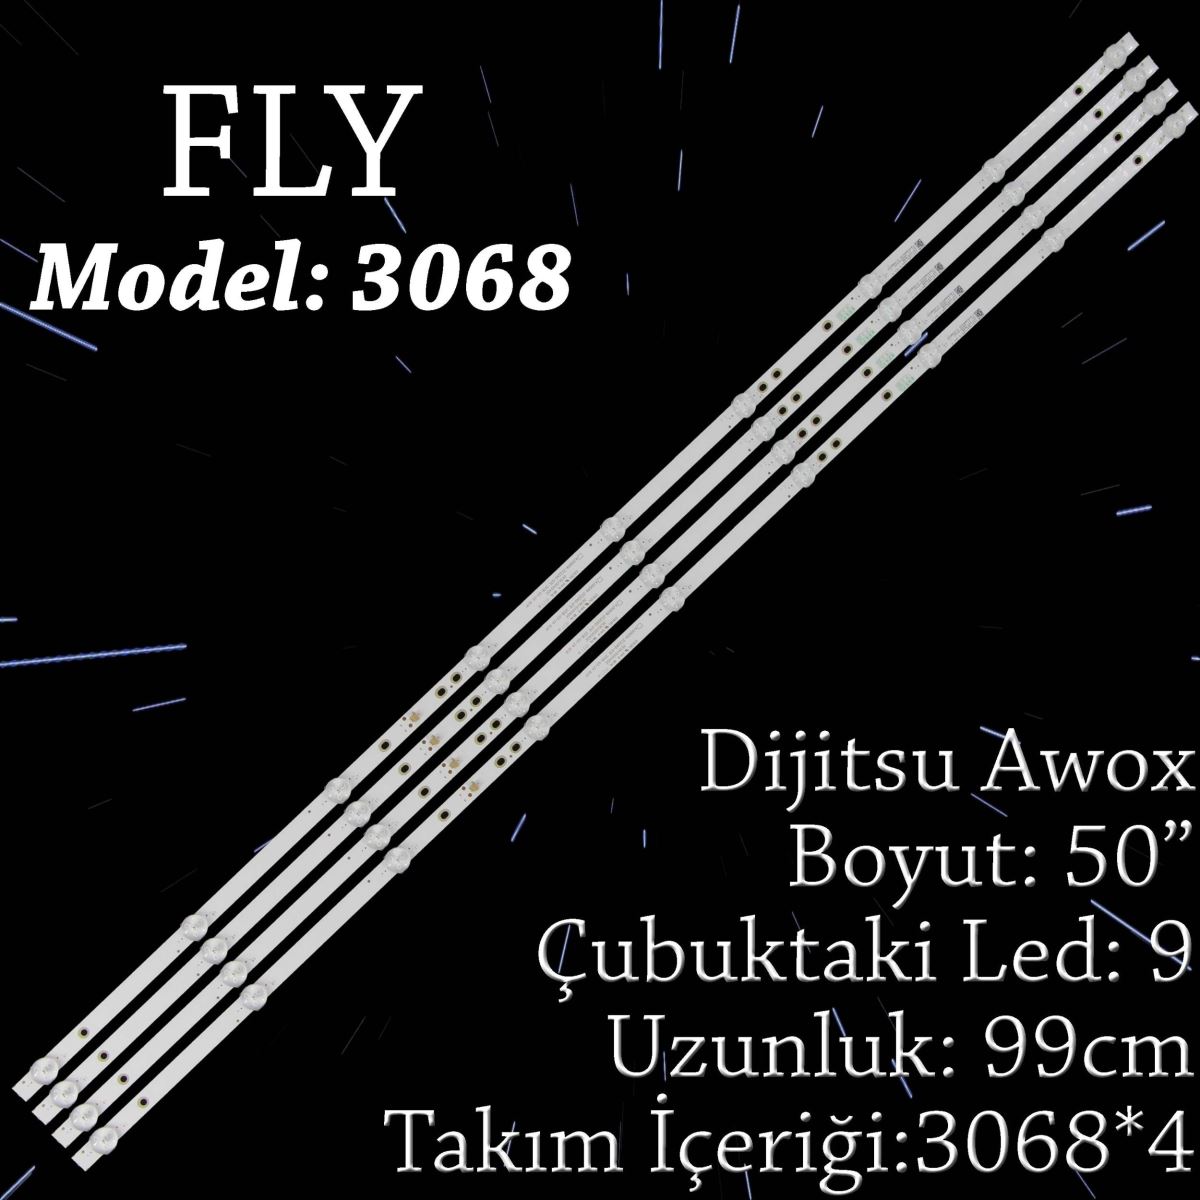 FLY-3068 DIJITSU 50 INC DIJITSU DJTV501, DJT50SF LED BAR , AWOX U5100 , U5000STR/4K 4